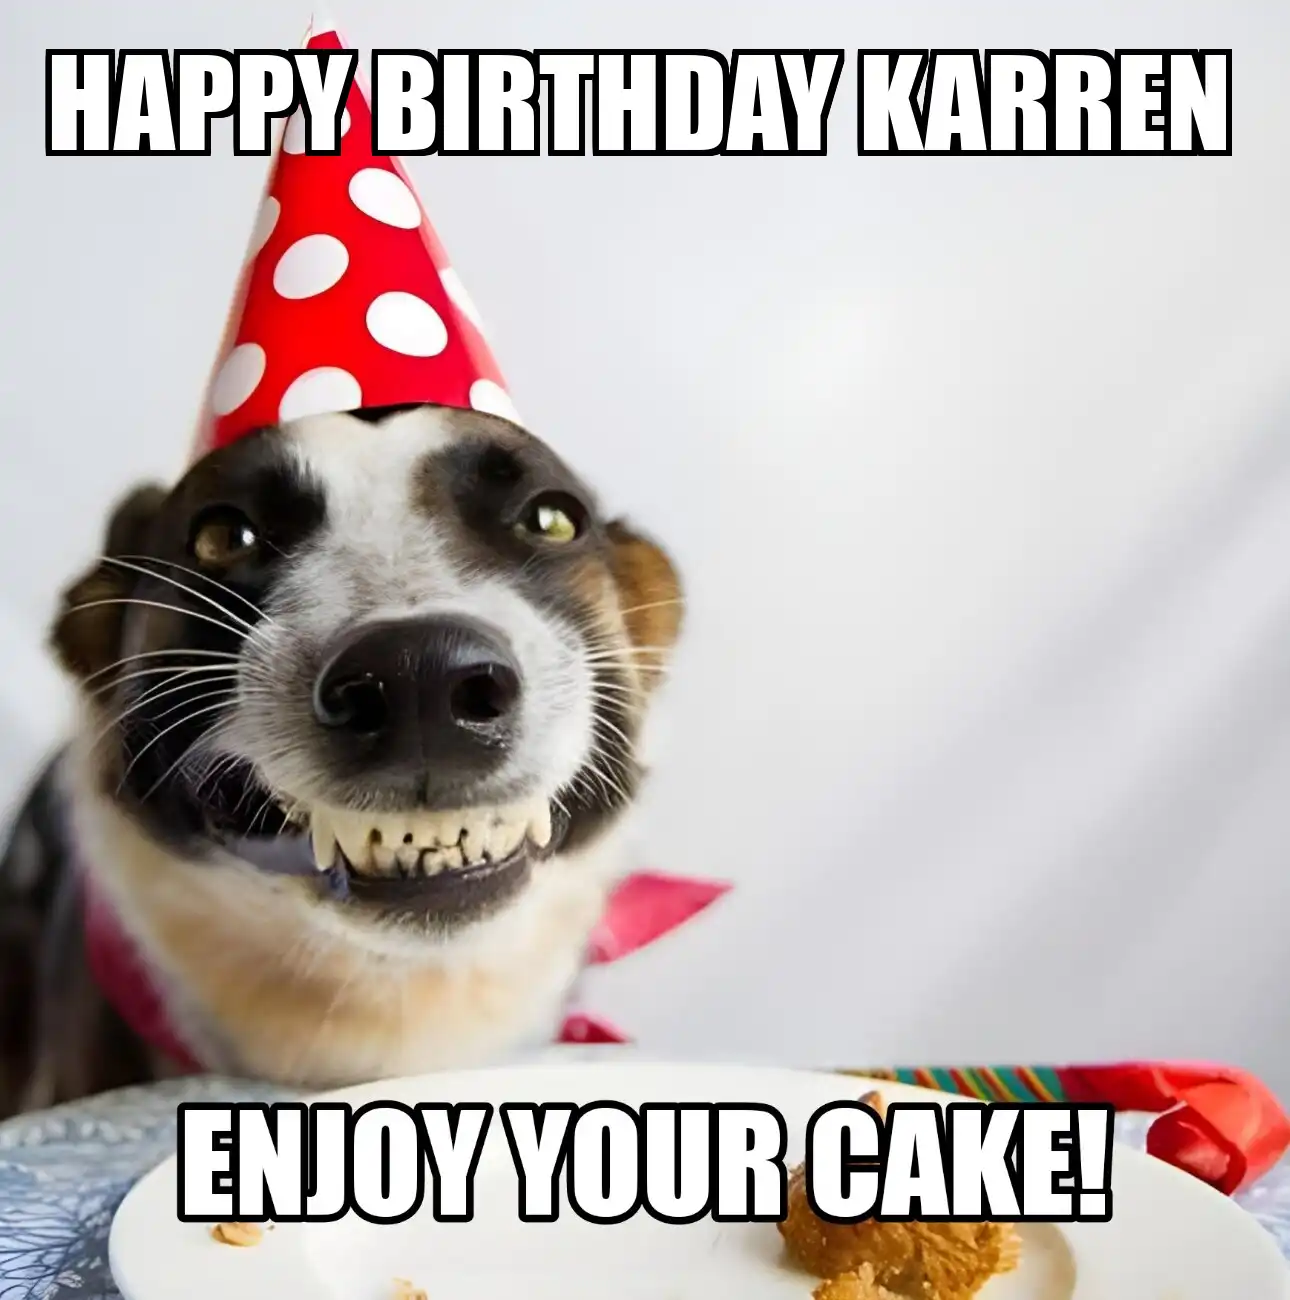 Happy Birthday Karren Enjoy Your Cake Dog Meme